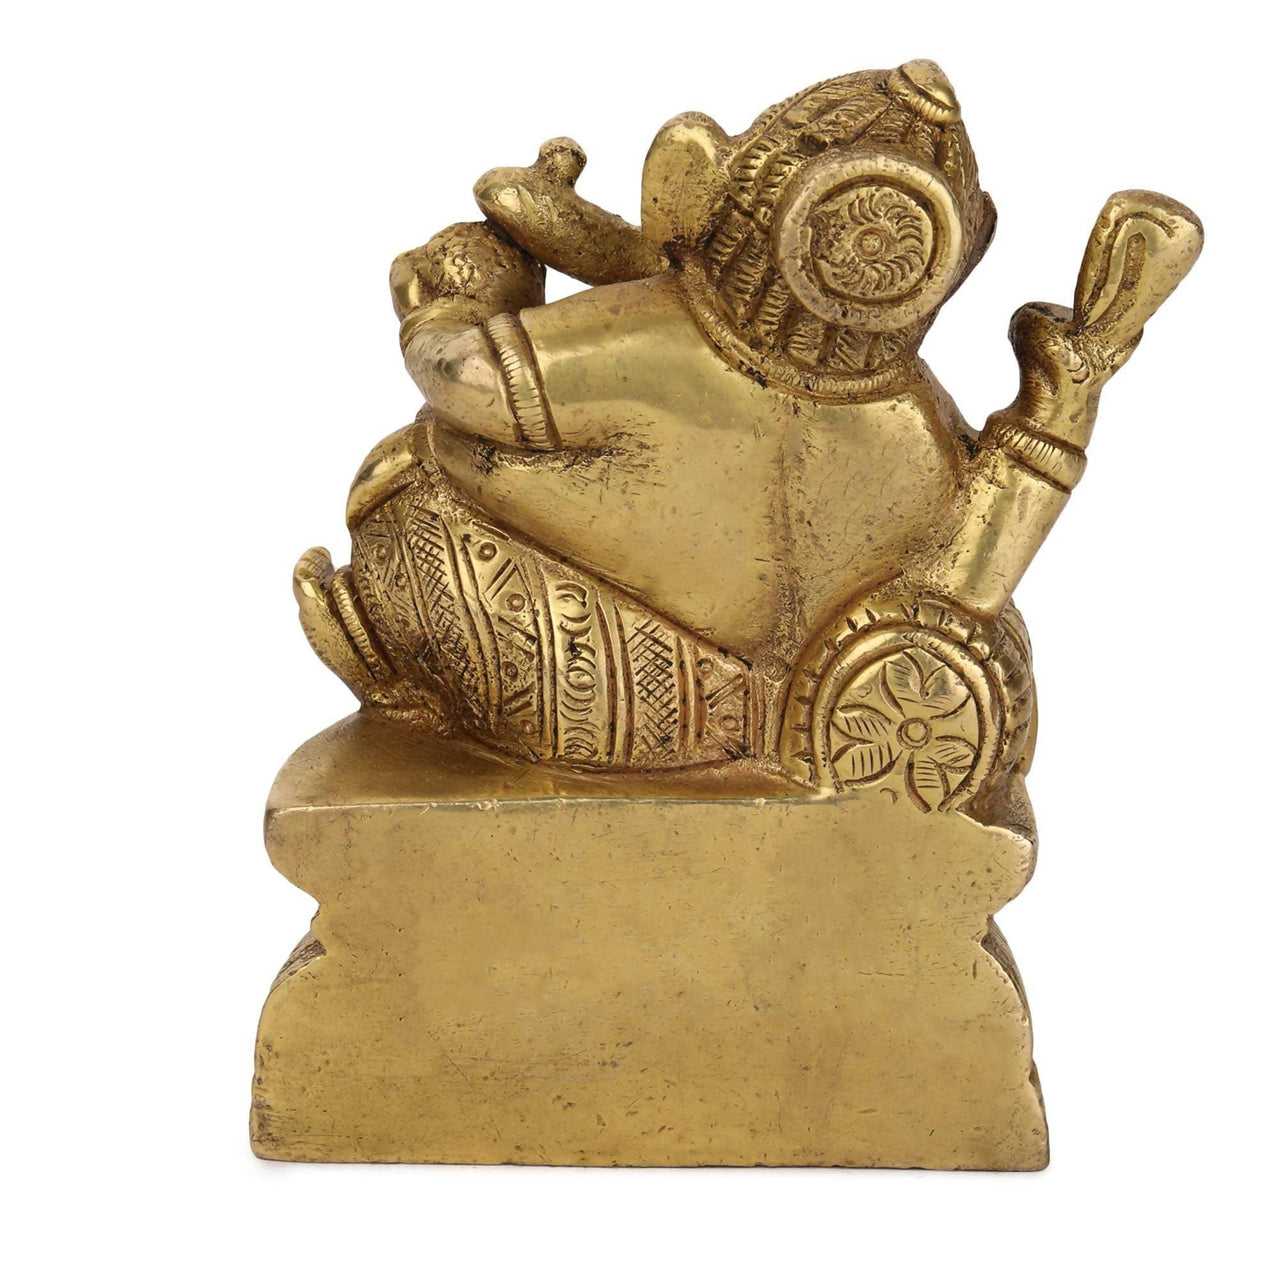 Devlok Resting Ganesha Idol